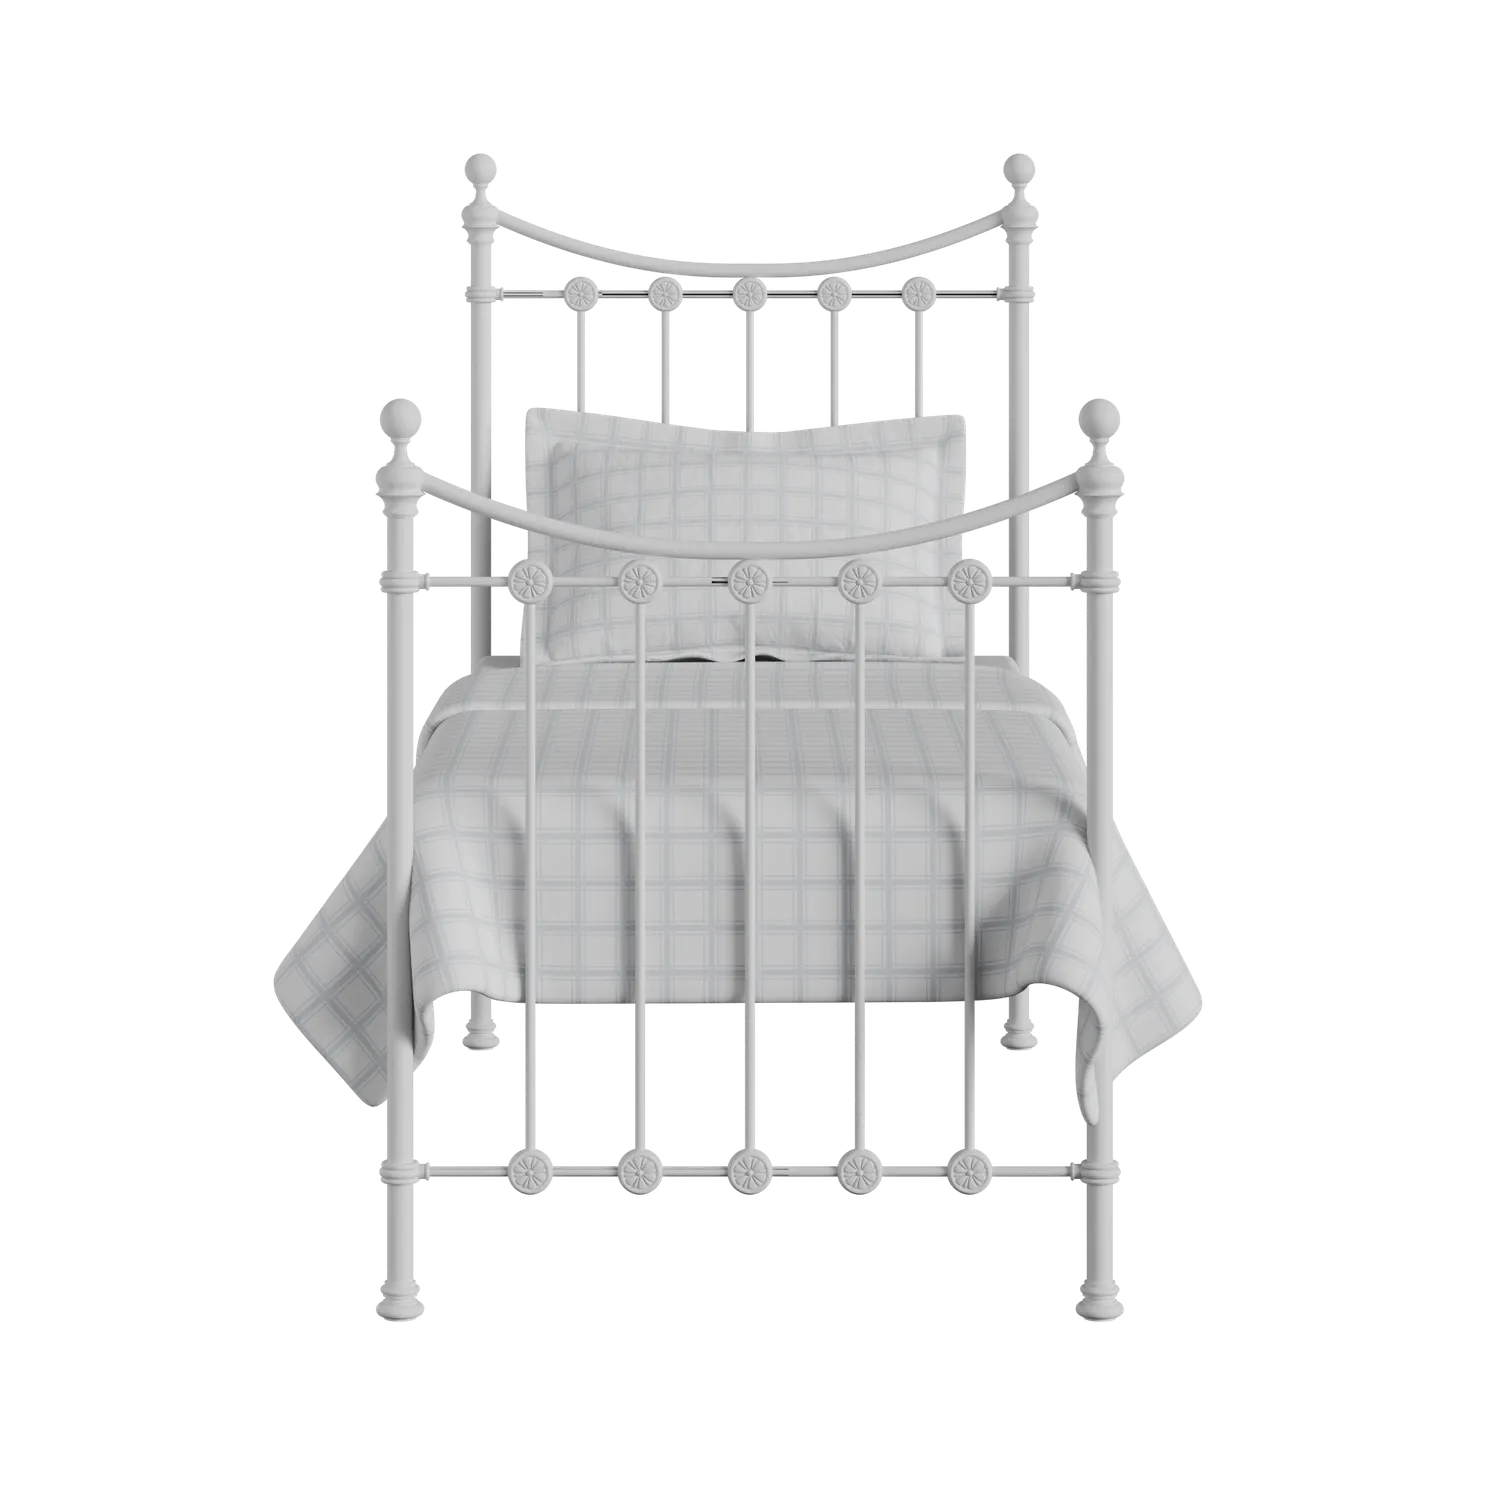 Carrick Solo letto singolo in ferro bianco